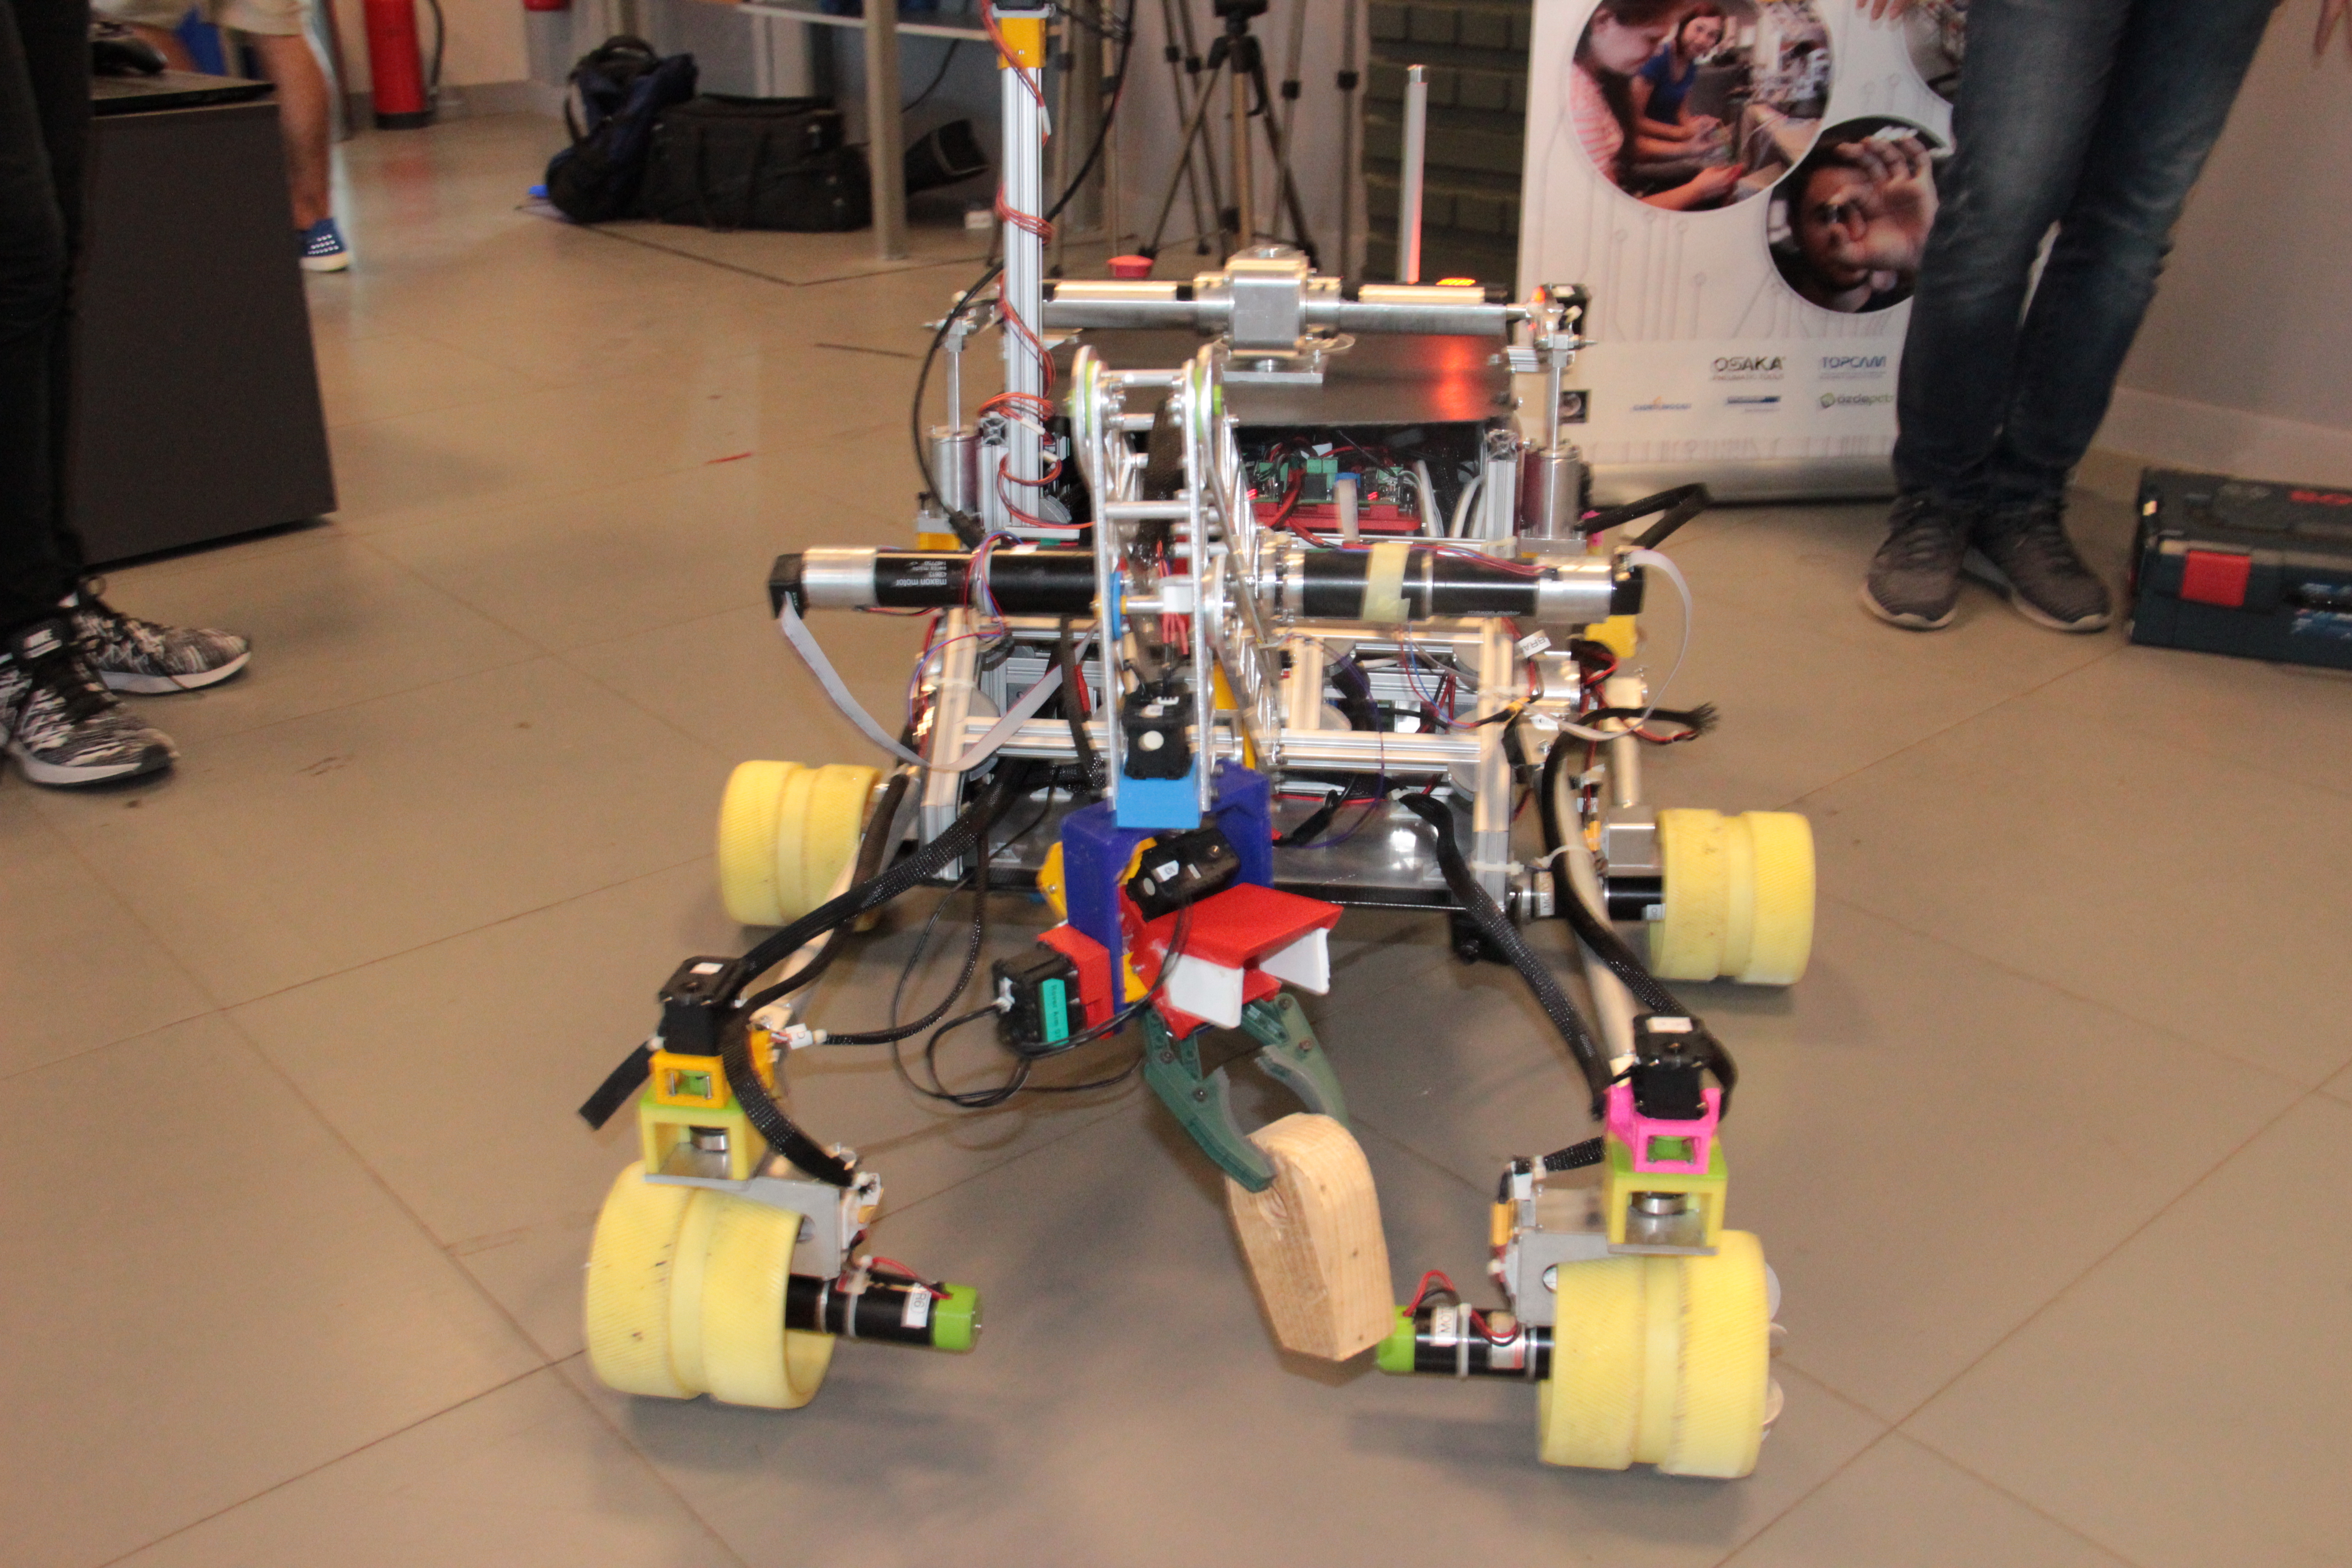 Özyeğin Üniversitesi öğrencilerinin tasarladığı mars robotu ikinci kez Türkiye’den katılan tek takım olarak Polonya’da yarışacak-1139